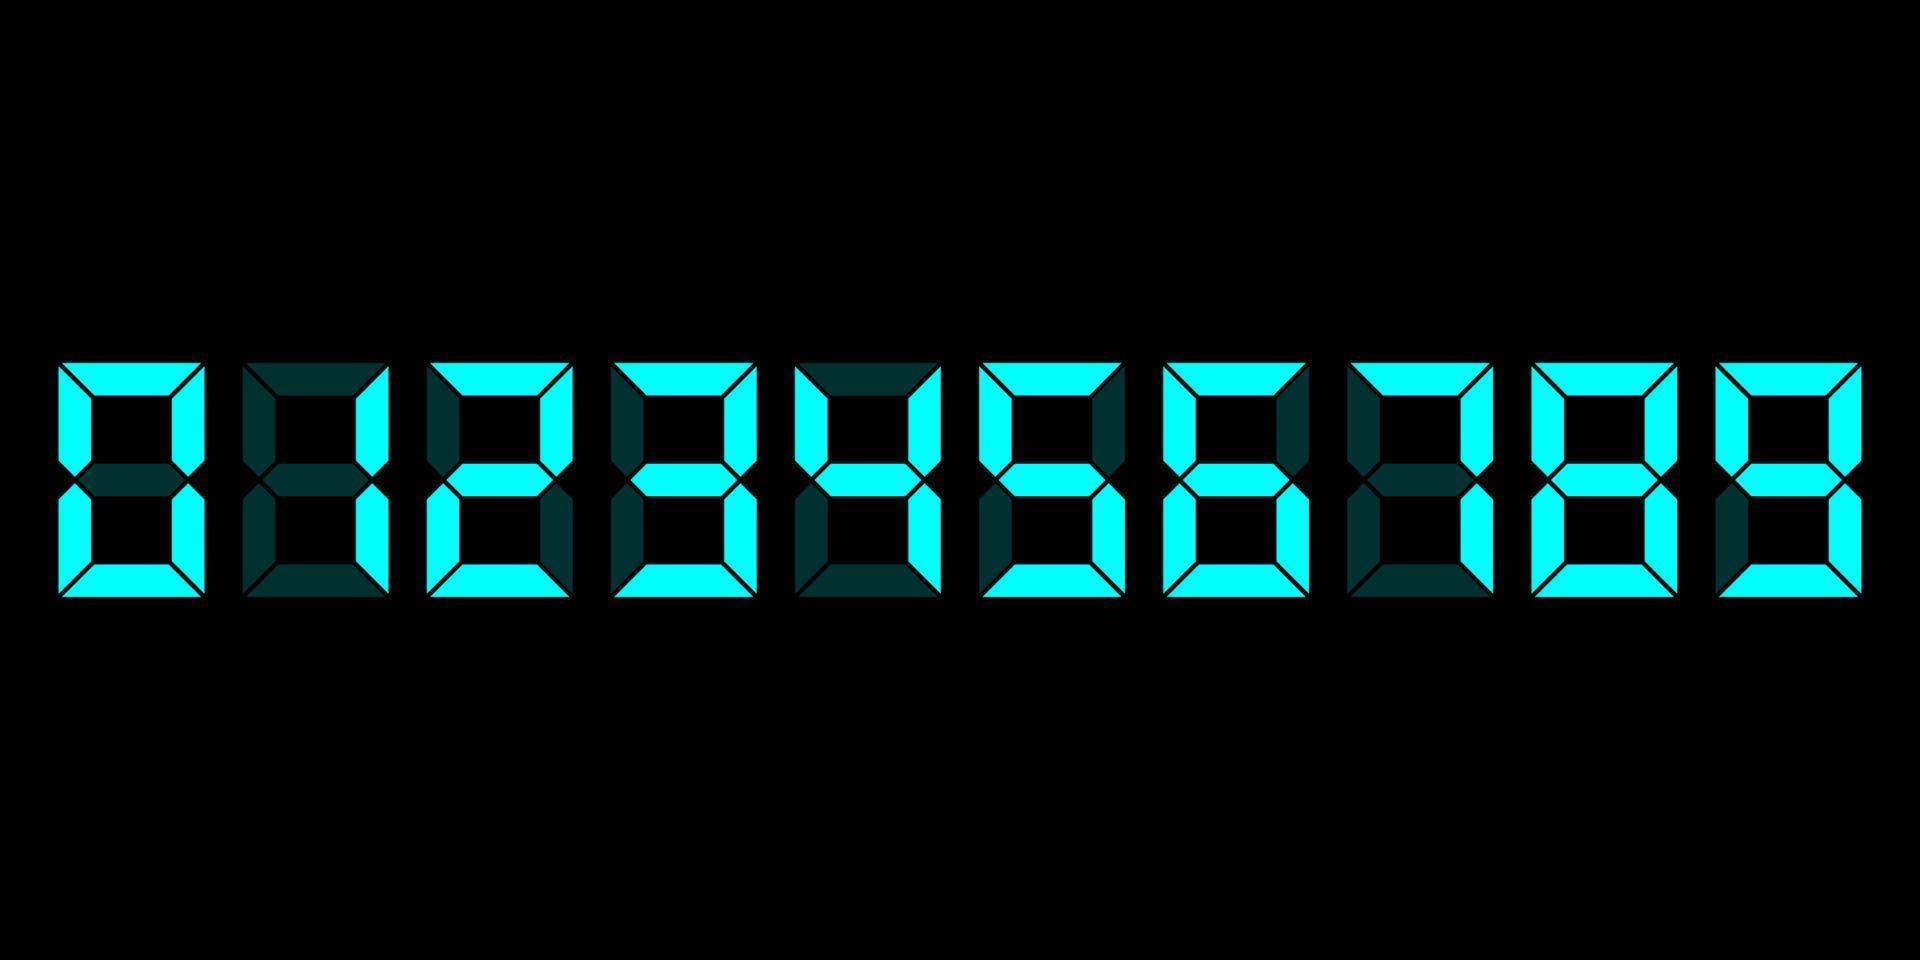 zéro à neuf numéros d'horloge électronique numérique cyan définis. ensemble de chiffres led lcd pour le compteur, l'horloge, la maquette de la calculatrice dans un style plat isolé sur fond noir. vecteur